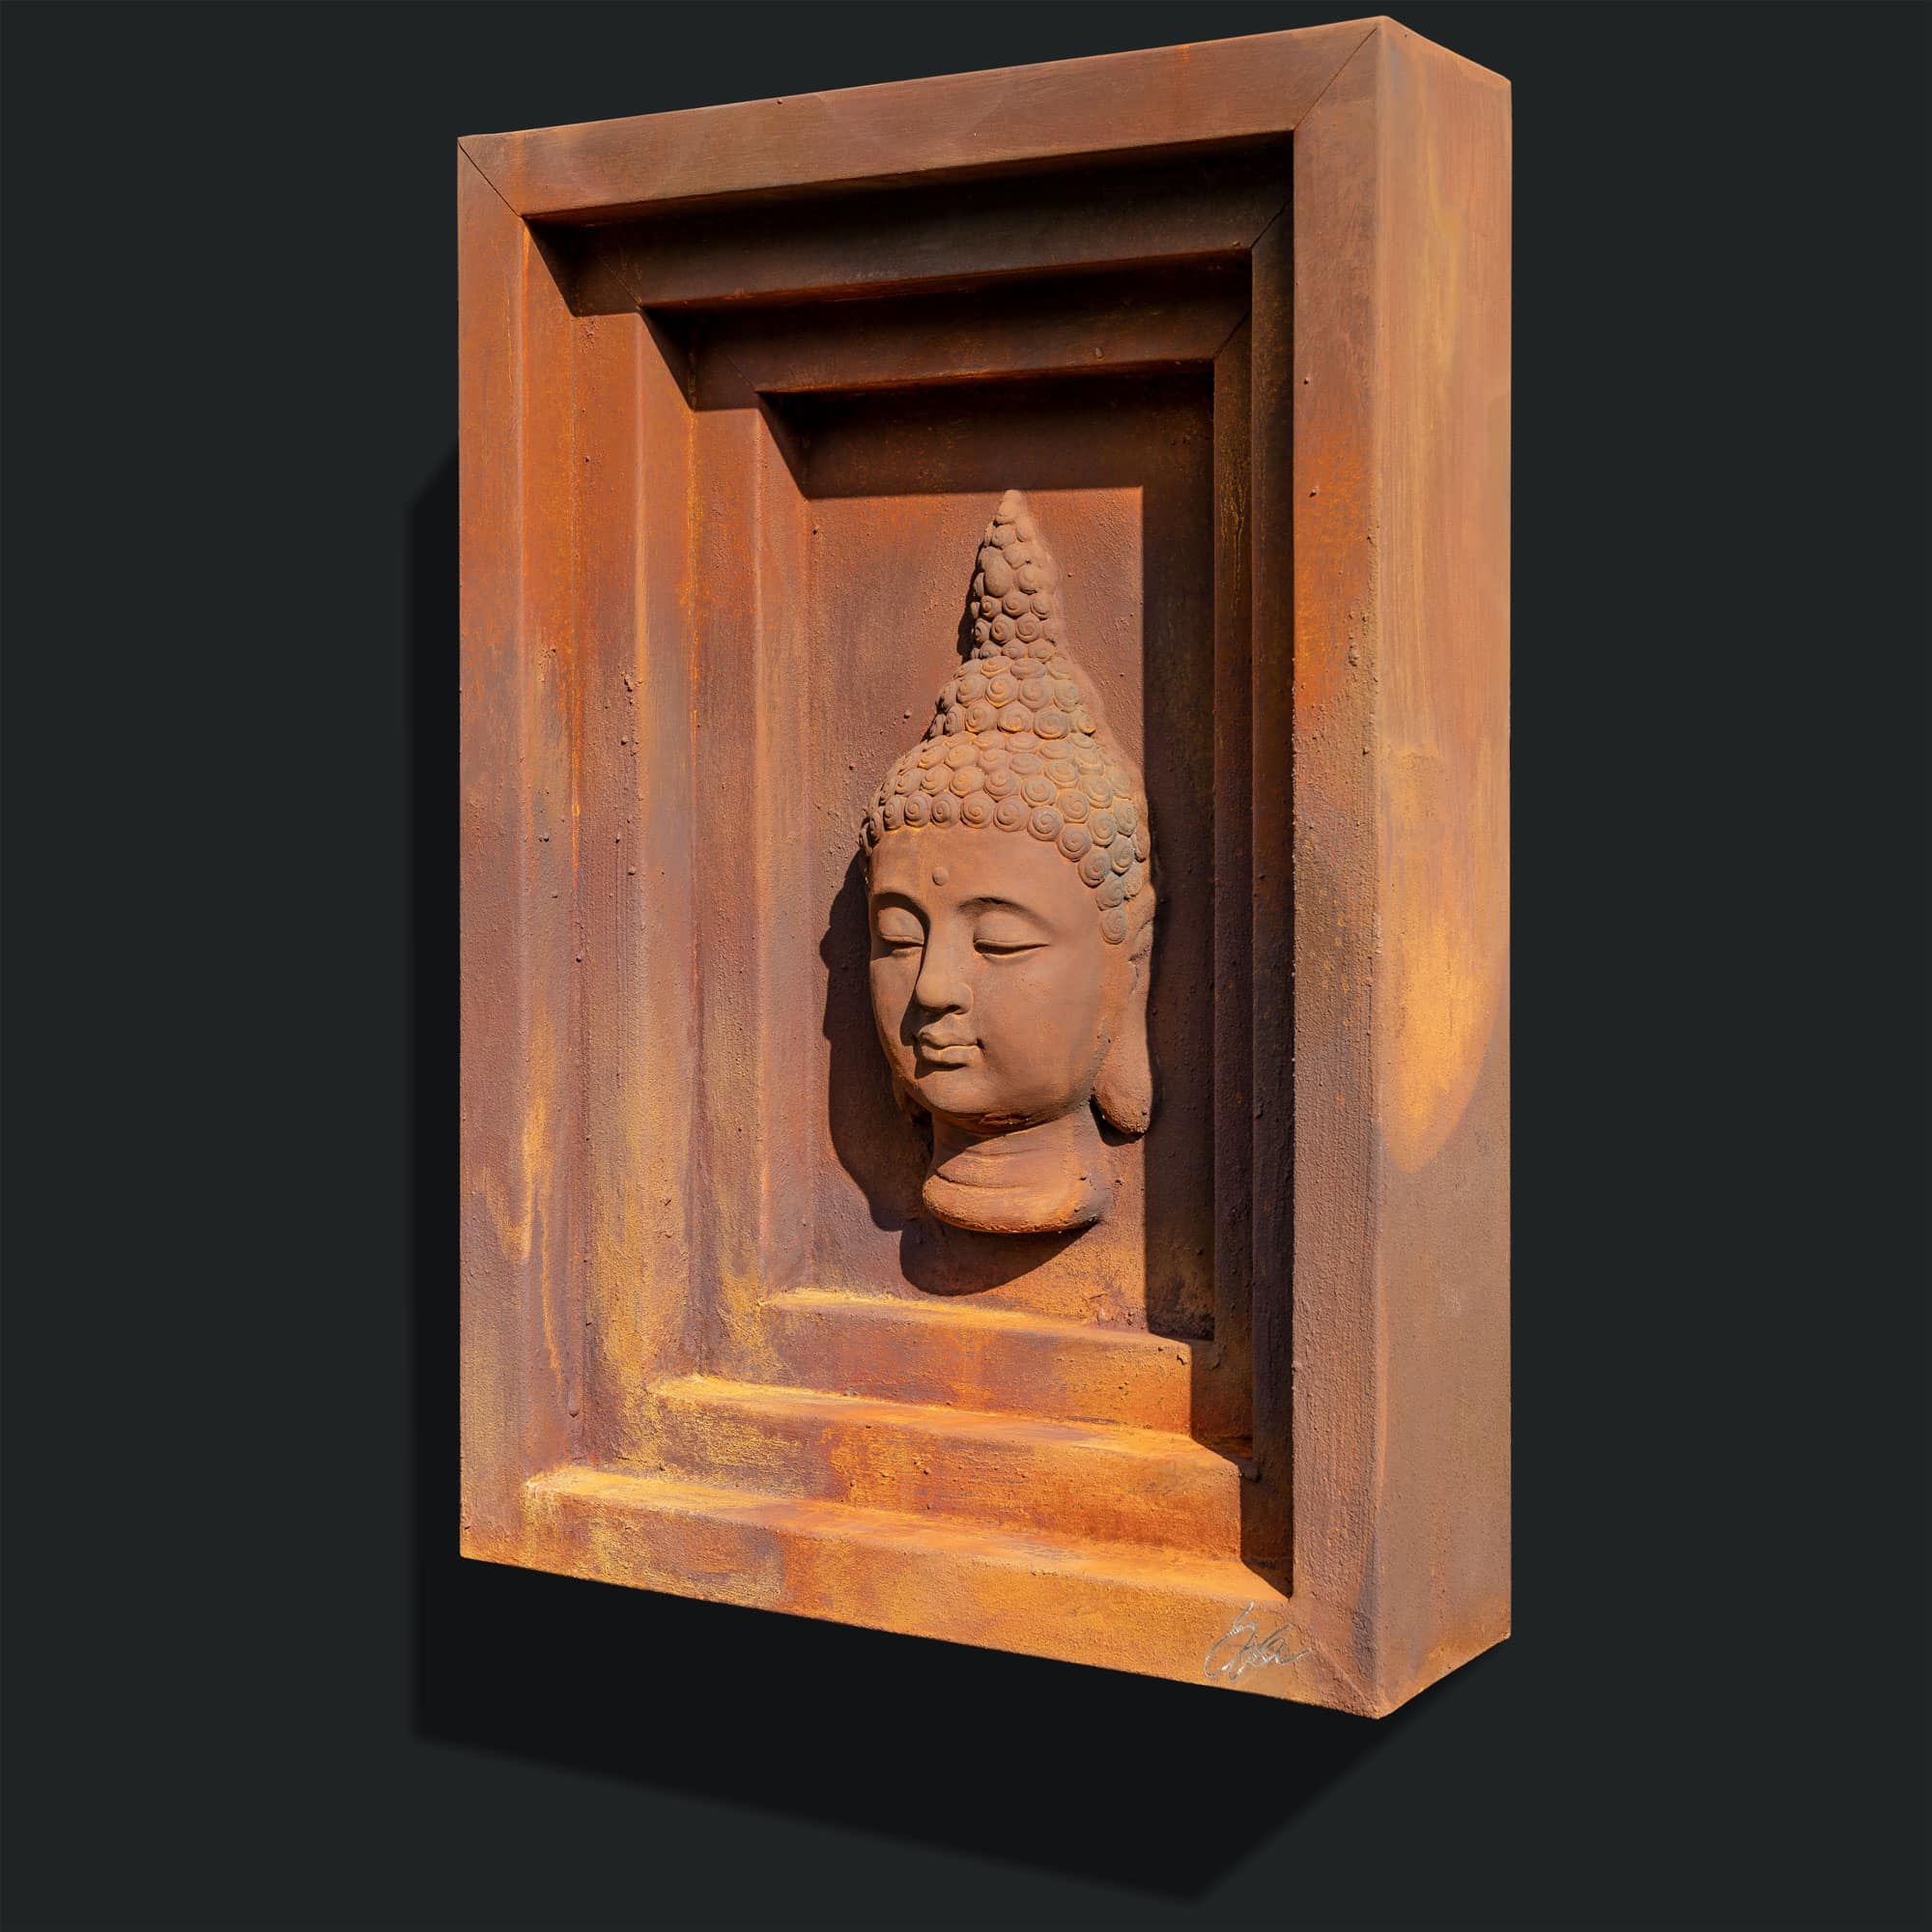 Stahlbild bzw. Bild aus Metall mit dem Namen „Tempel“ aus der Archiv Kollektion von Daniel Springer. Stahlbild mit Rostoberfläche und Buddha Kopf